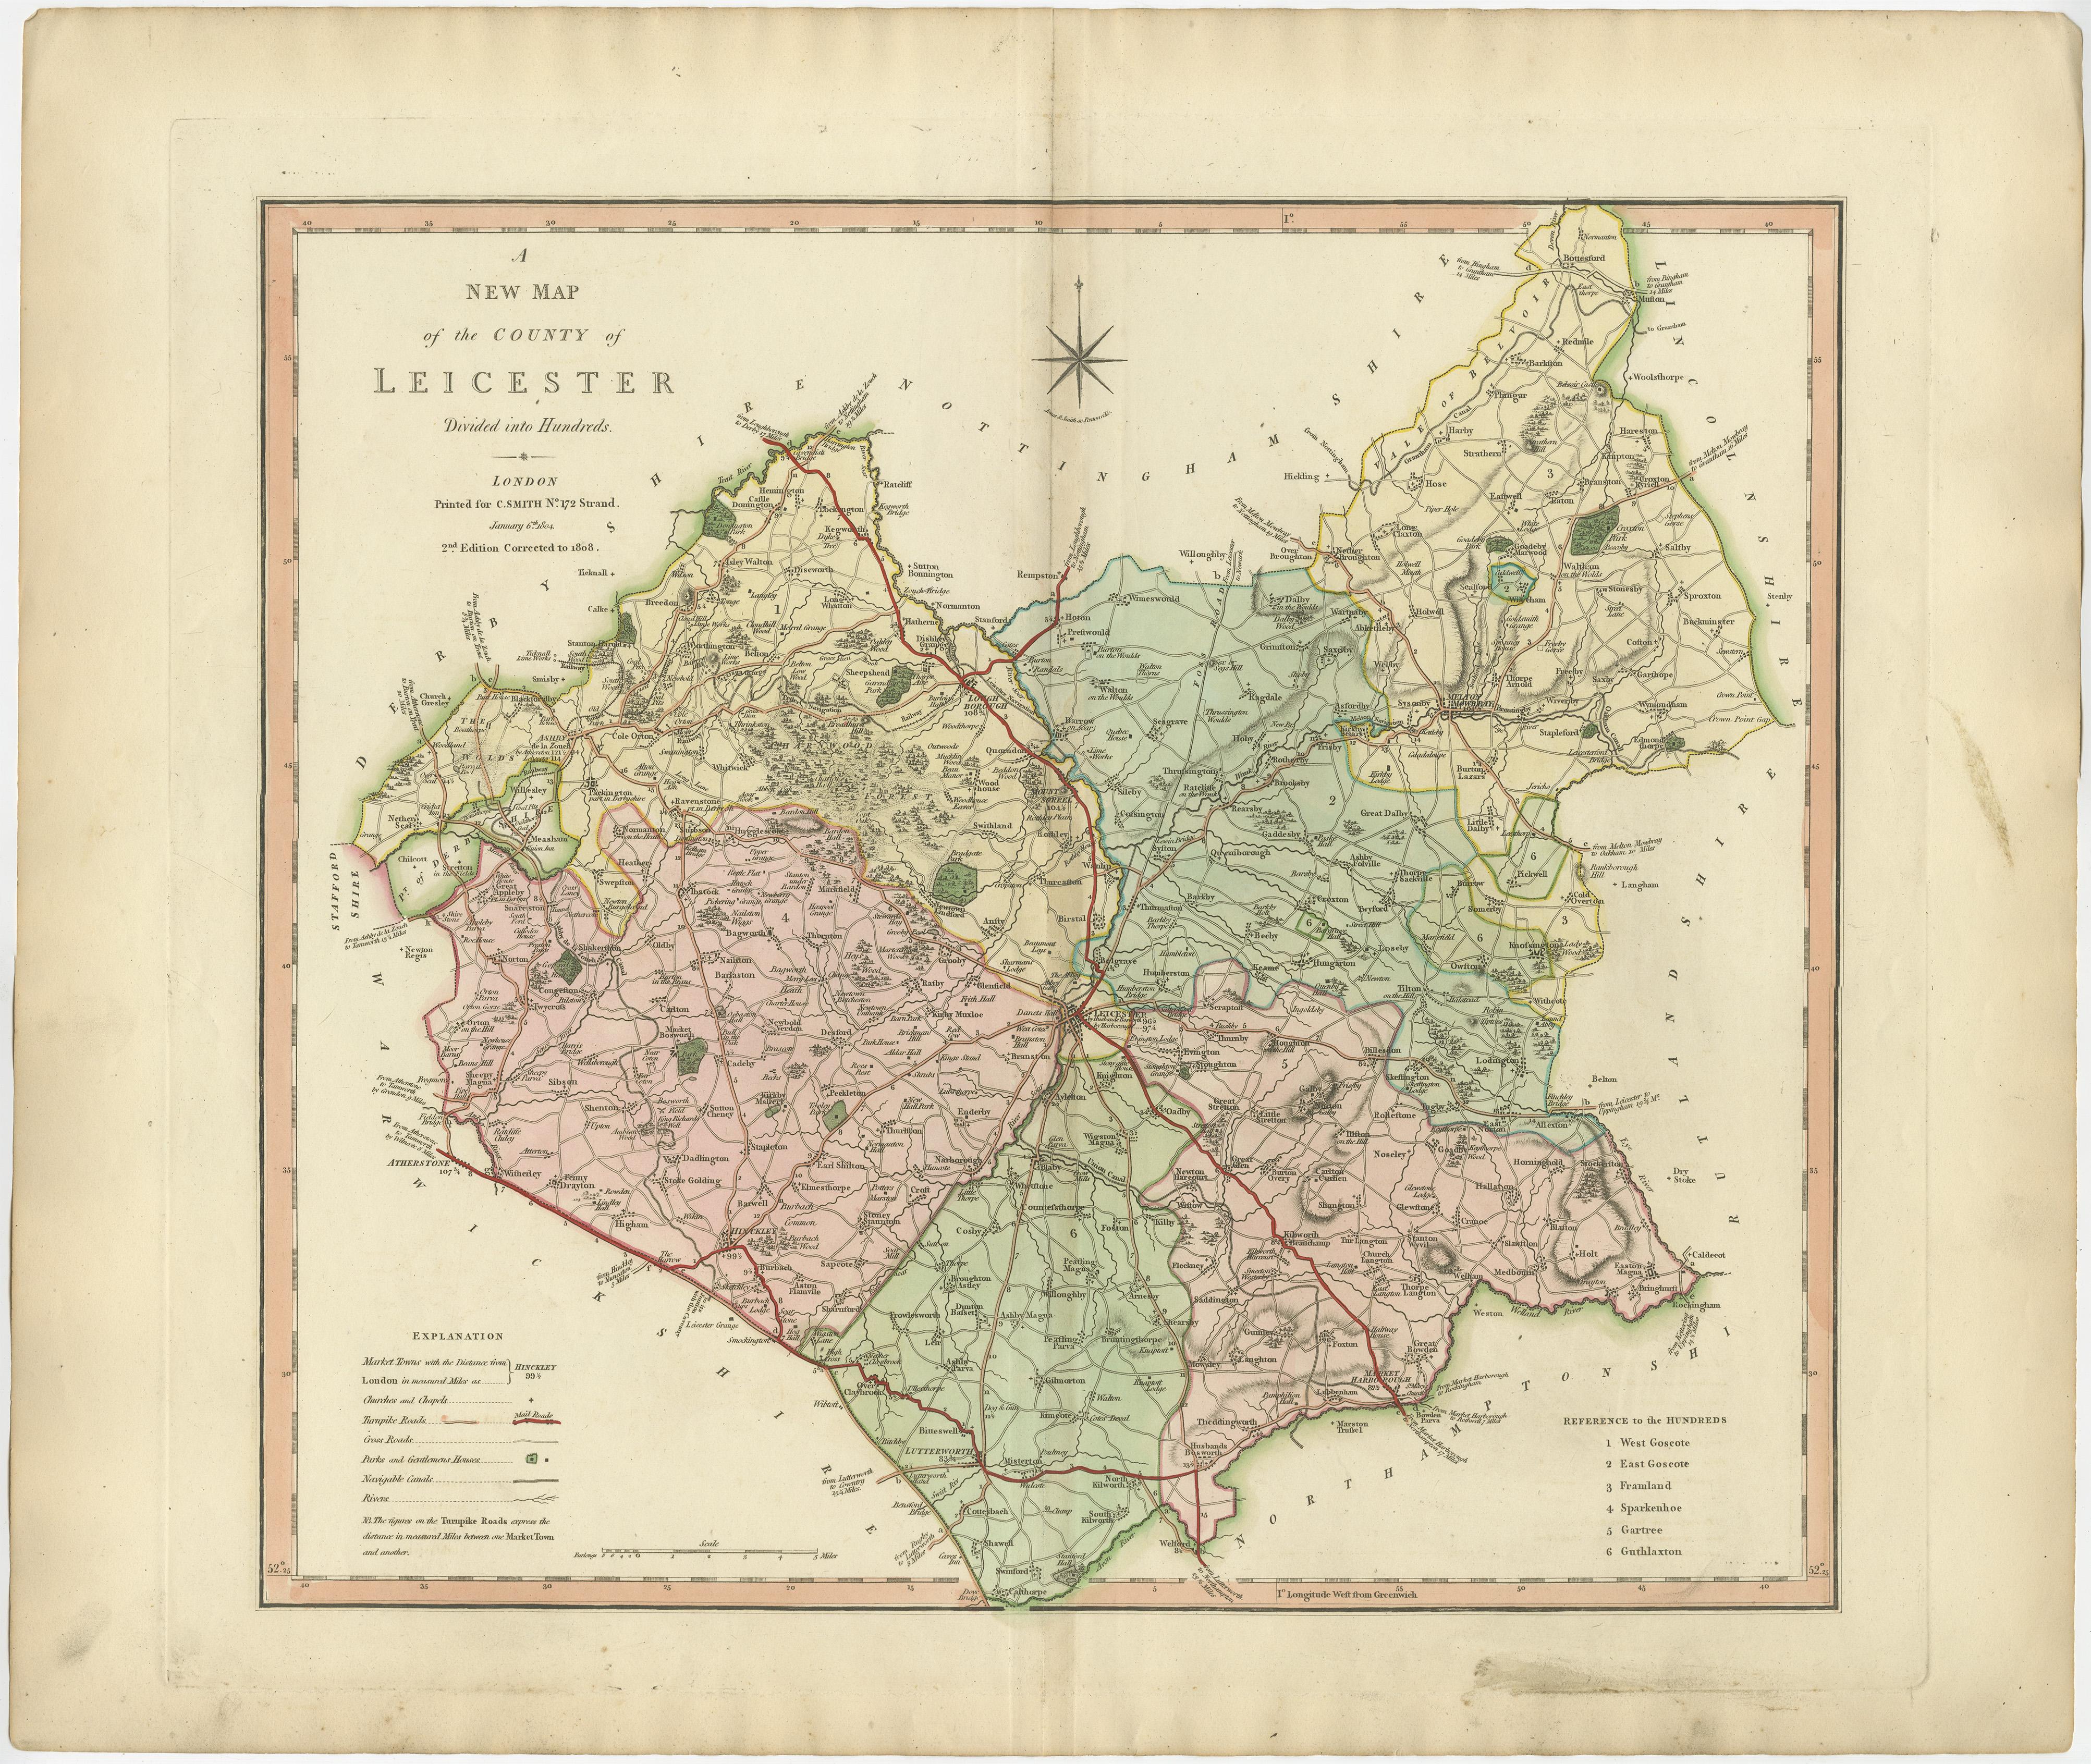 Carte ancienne du comté de Leicestershire publiée pour la première fois vers 1800. Les villages, les villes et les cités illustrés comprennent Lutterworth, Ashby, Hinkley et Market Harborough.

Charles Smith était un cartographe travaillant à